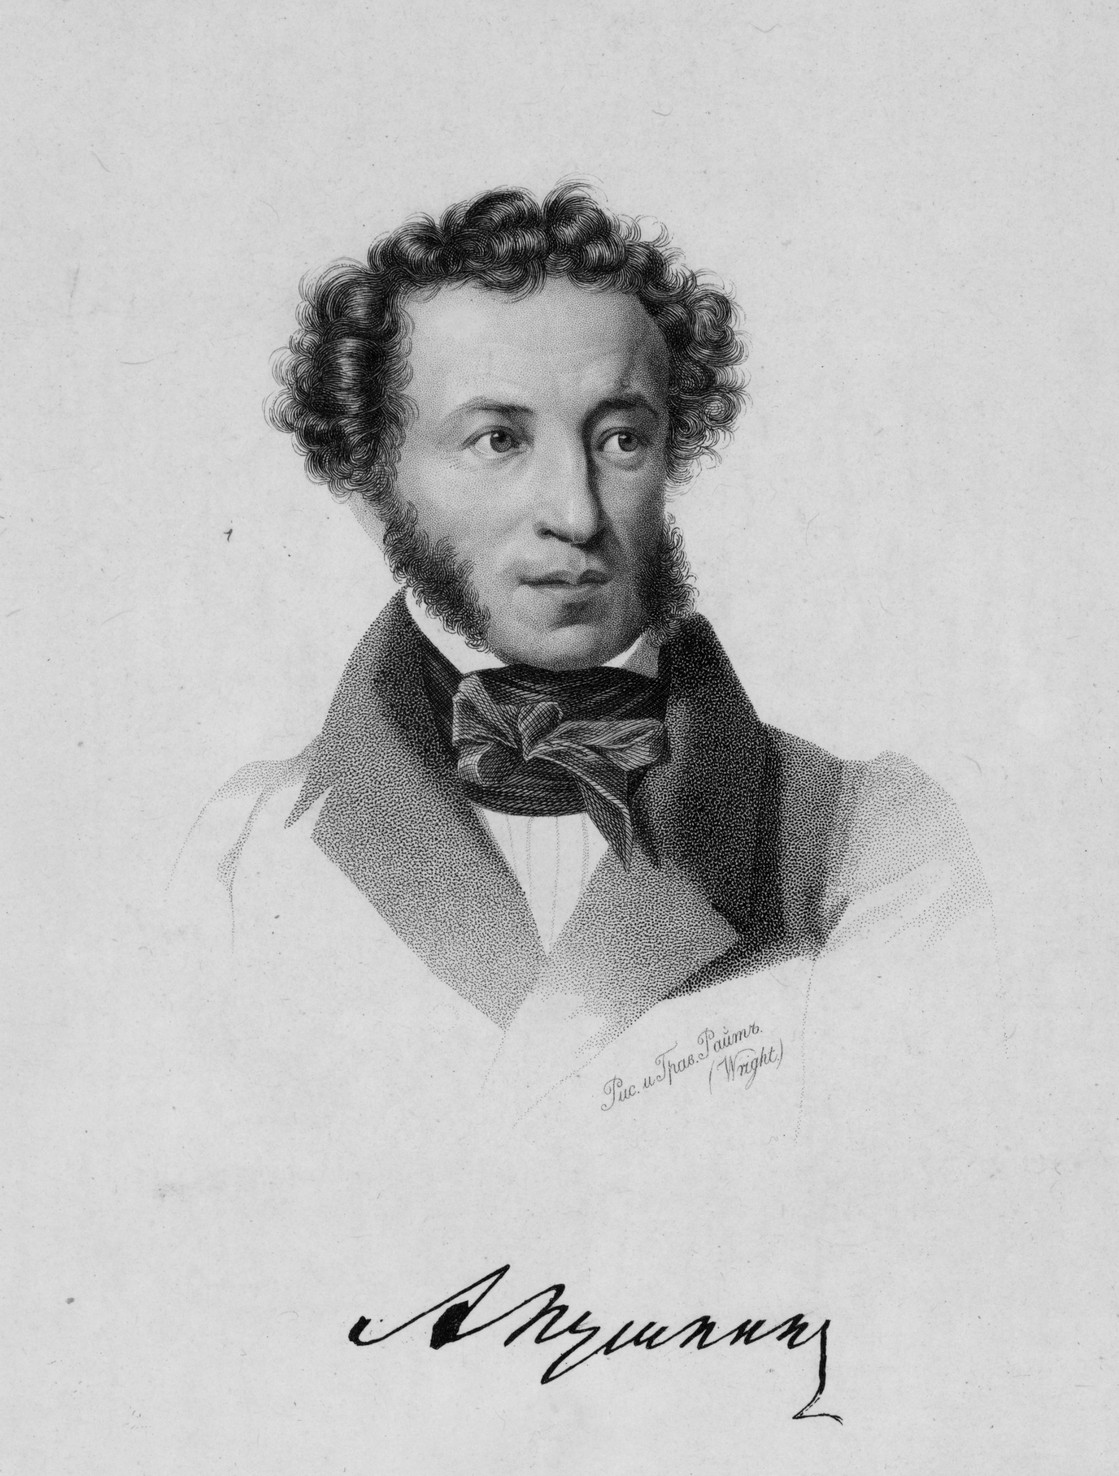 Т. Райт по собственному рисунку Портрет А.С. Пушкина. 1837 Гравюра пунктиром